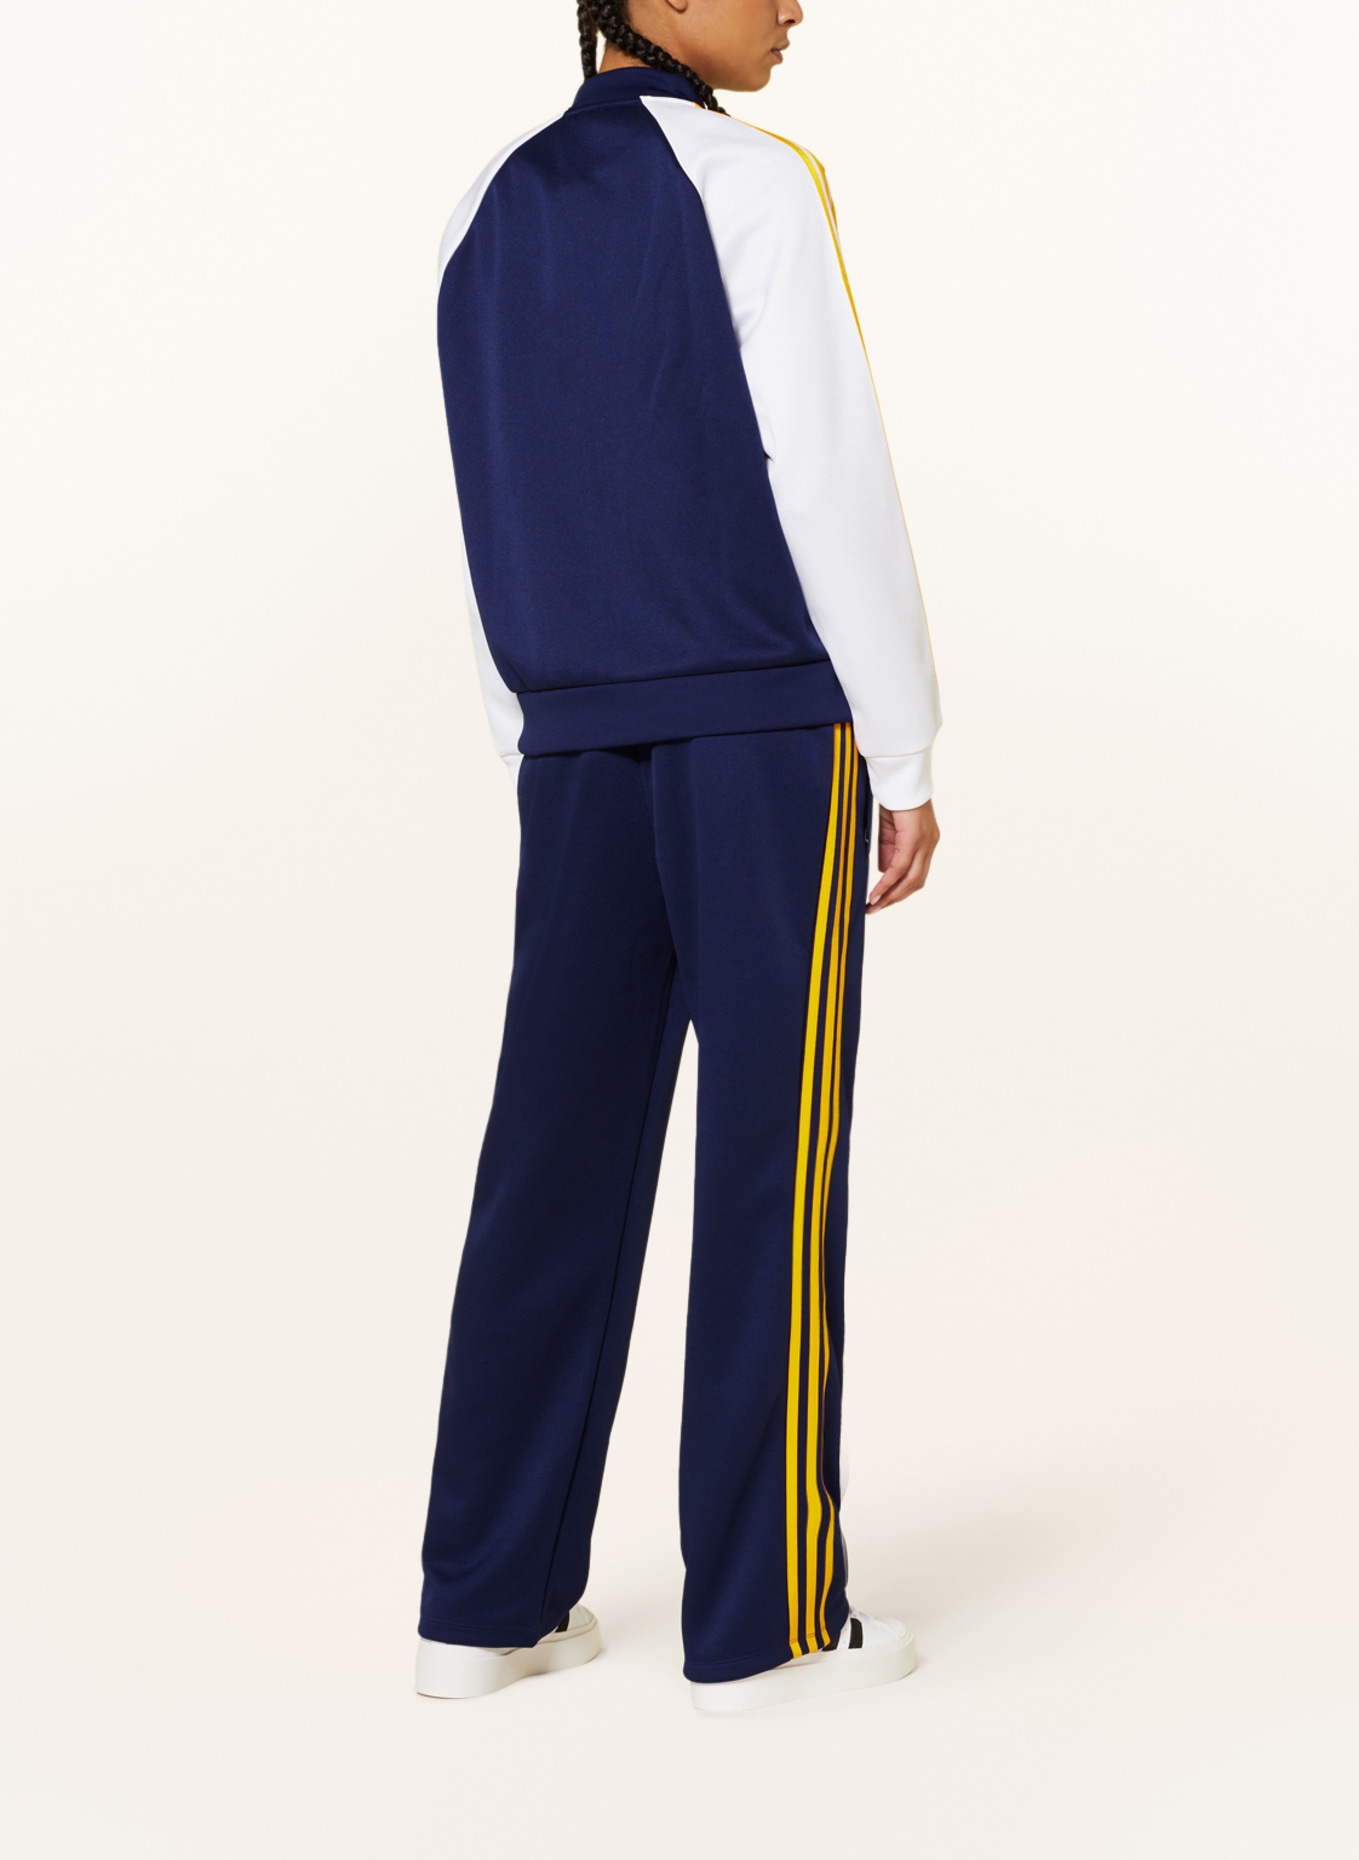 ADICOLOR white blue/ jacket SST in dark Originals adidas Training OVERSIZED CLASSICS